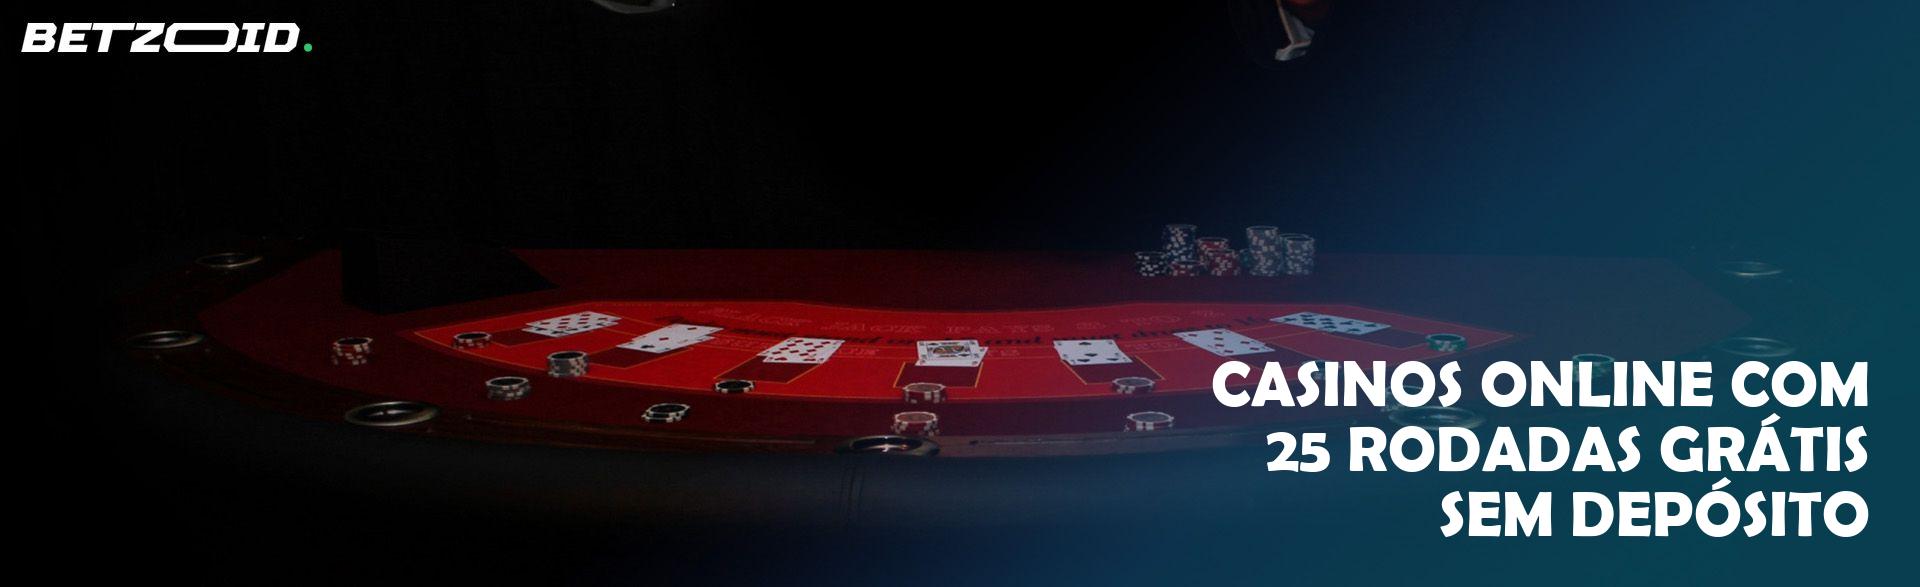 Casinos Online com 25 Rodadas Grátis sem Depósito.